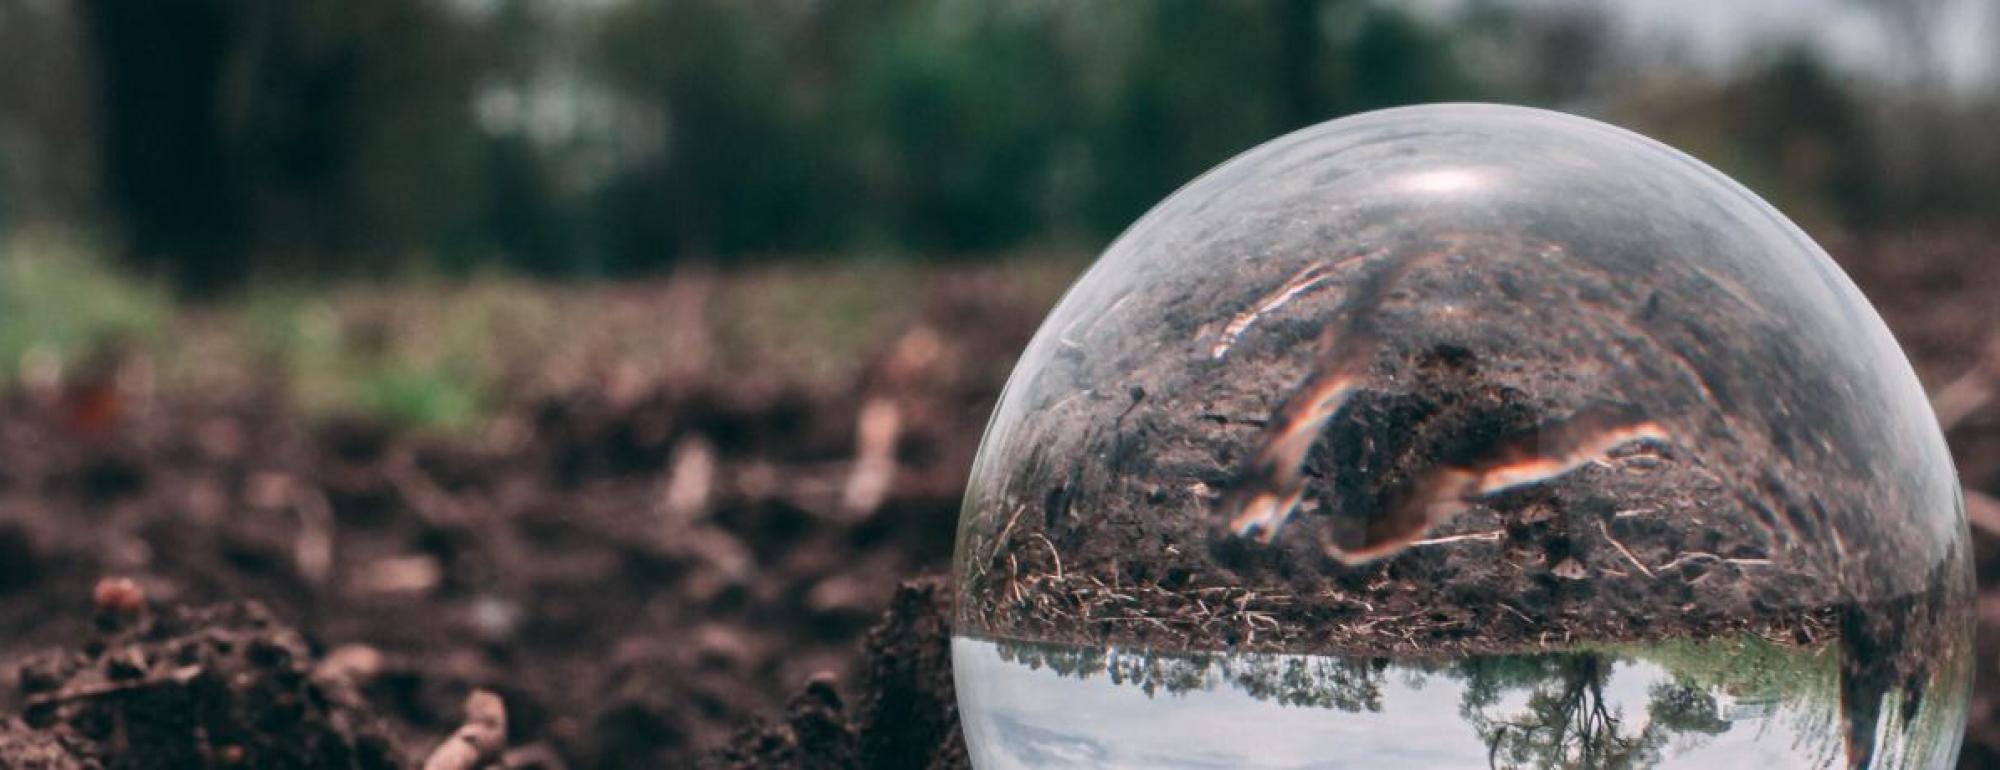 glass globe in soil